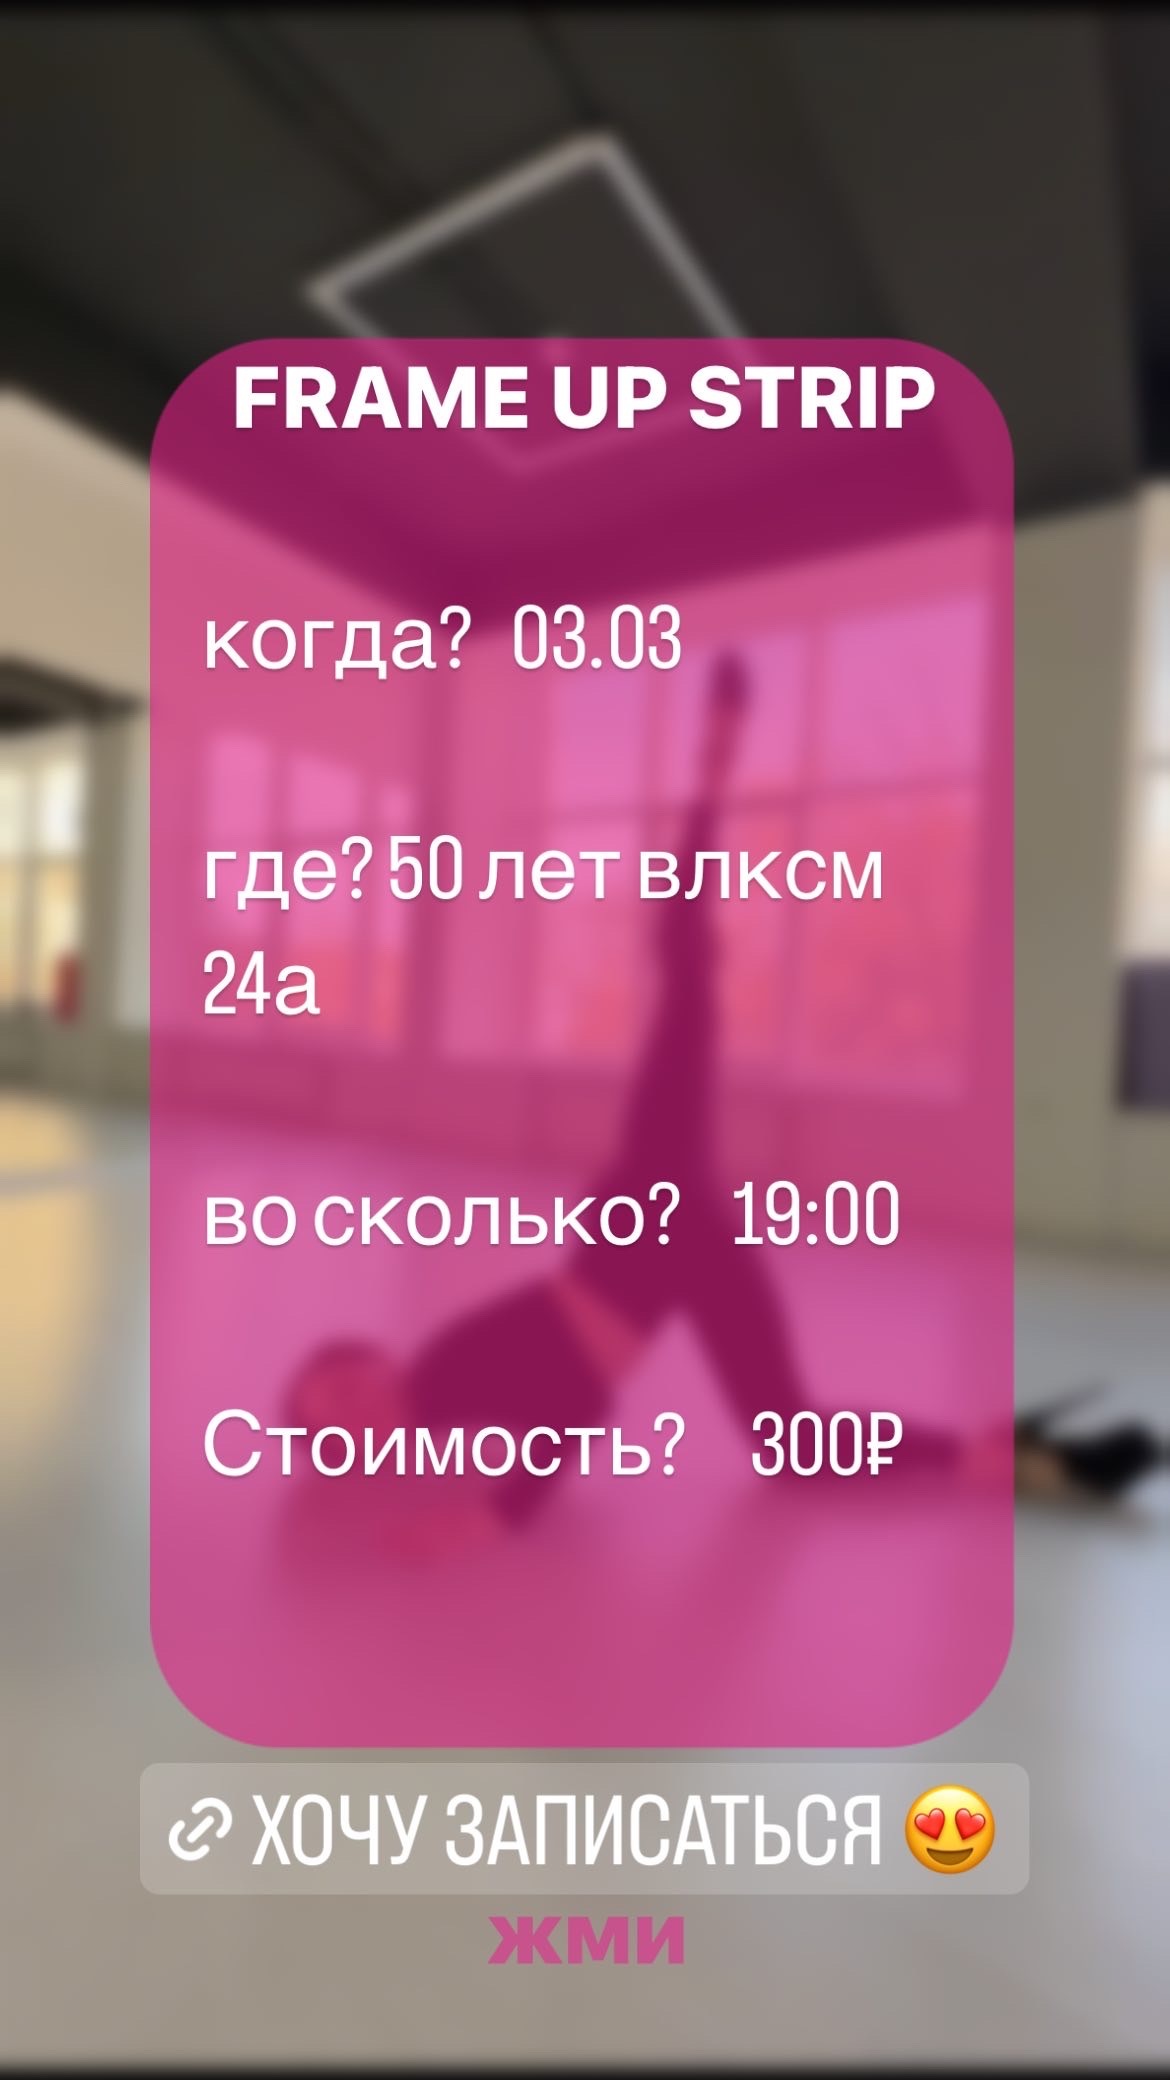 3 Марта 2023 года в г. Ставрополь состоится первая пробная тренировка по истине провокационного танца FRAME UP STRIP